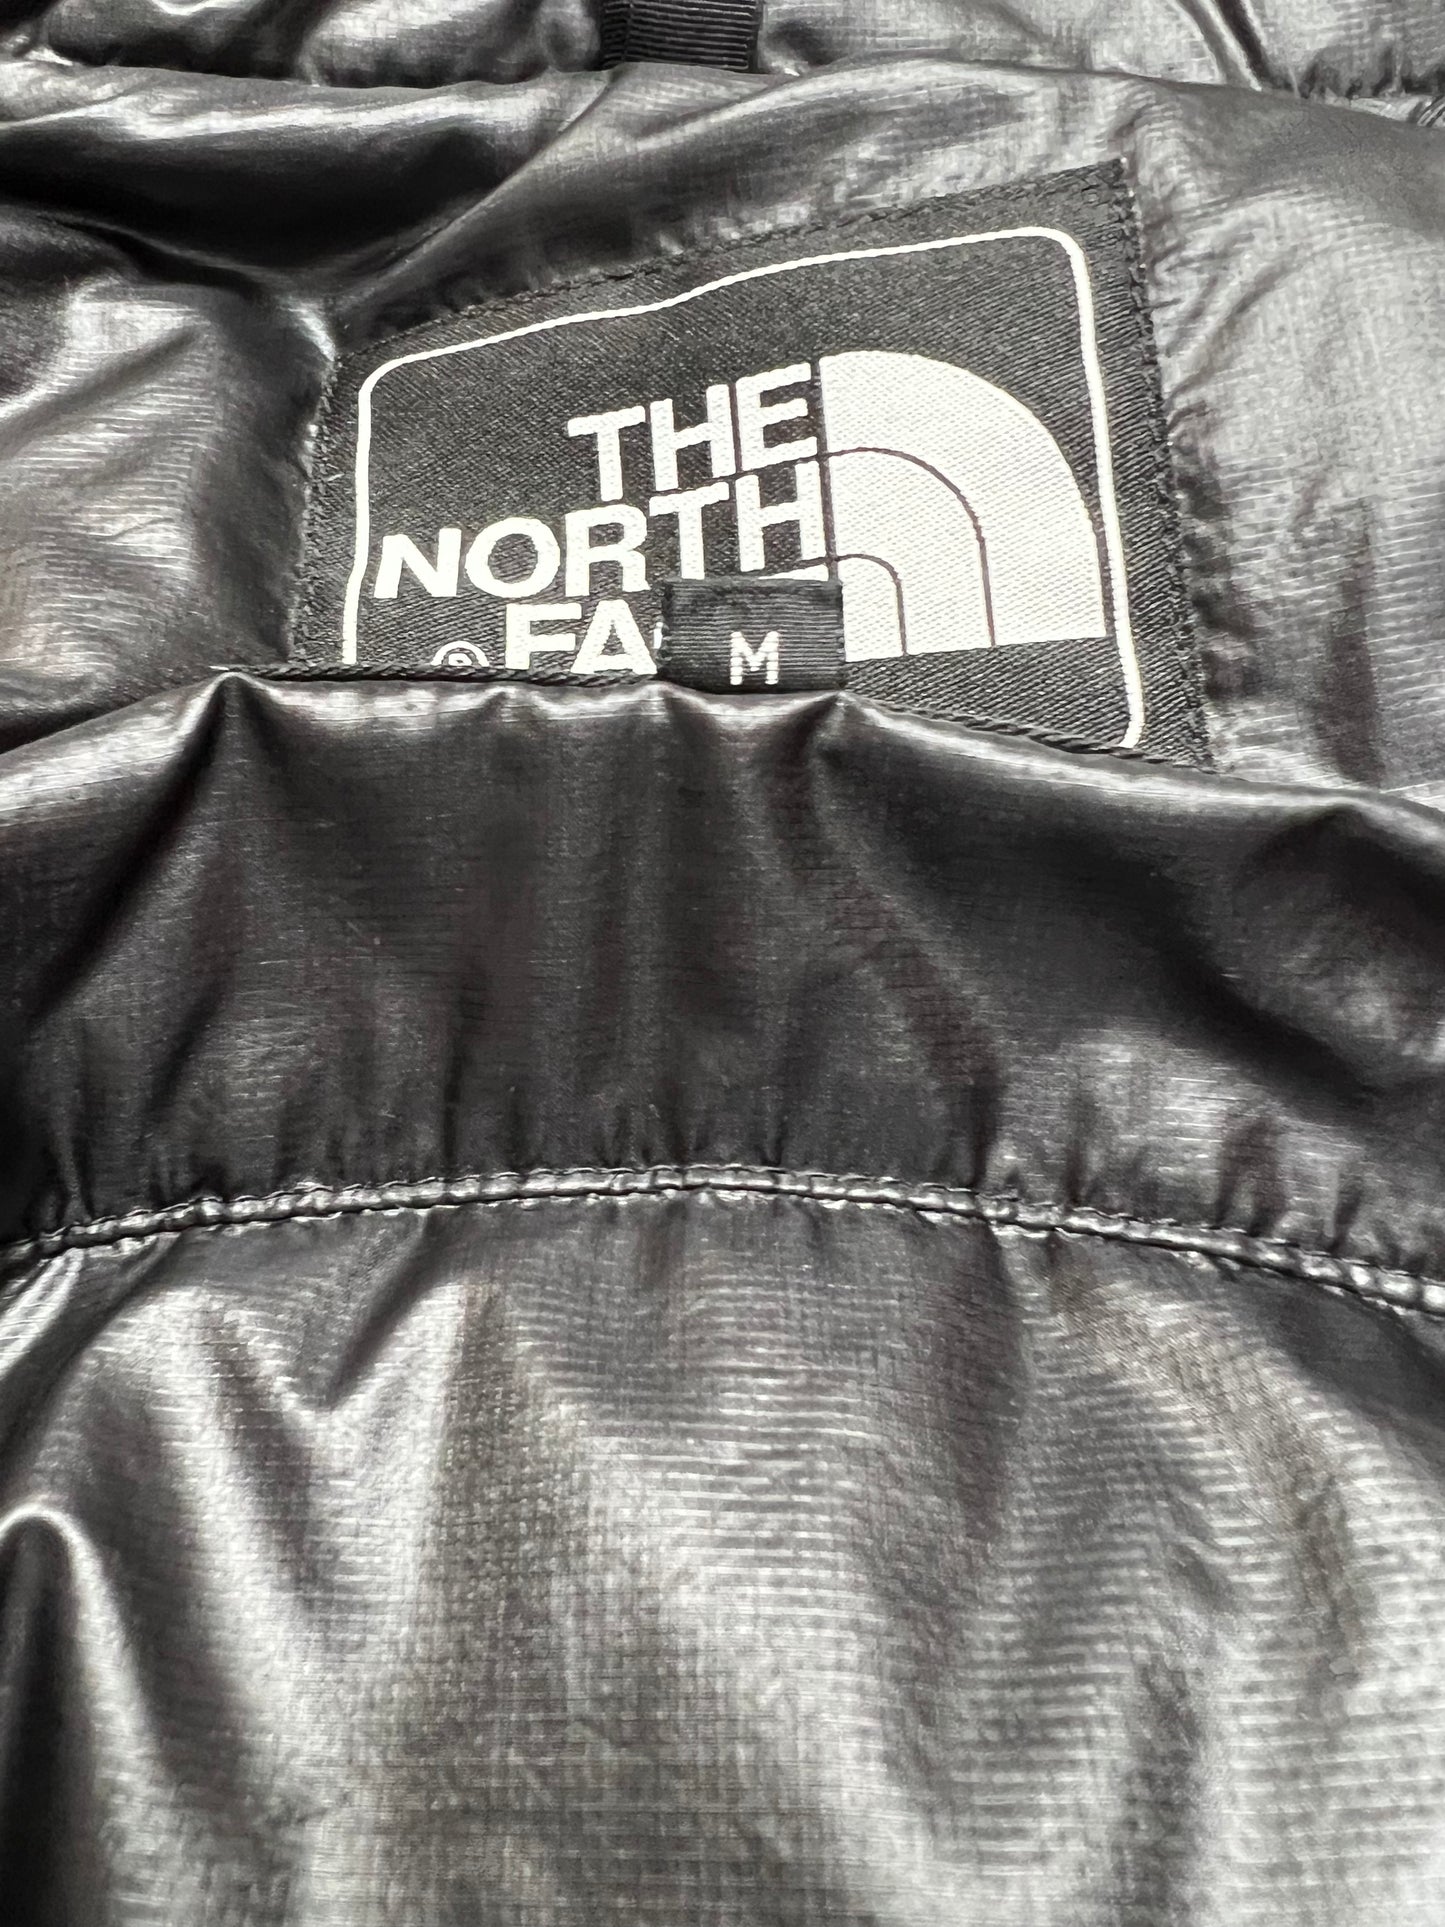 10049【THE NORTH FACE】ザノースフェイス メンズ サミットシリーズ アコンカグア ダウンジャケット ブラック 95